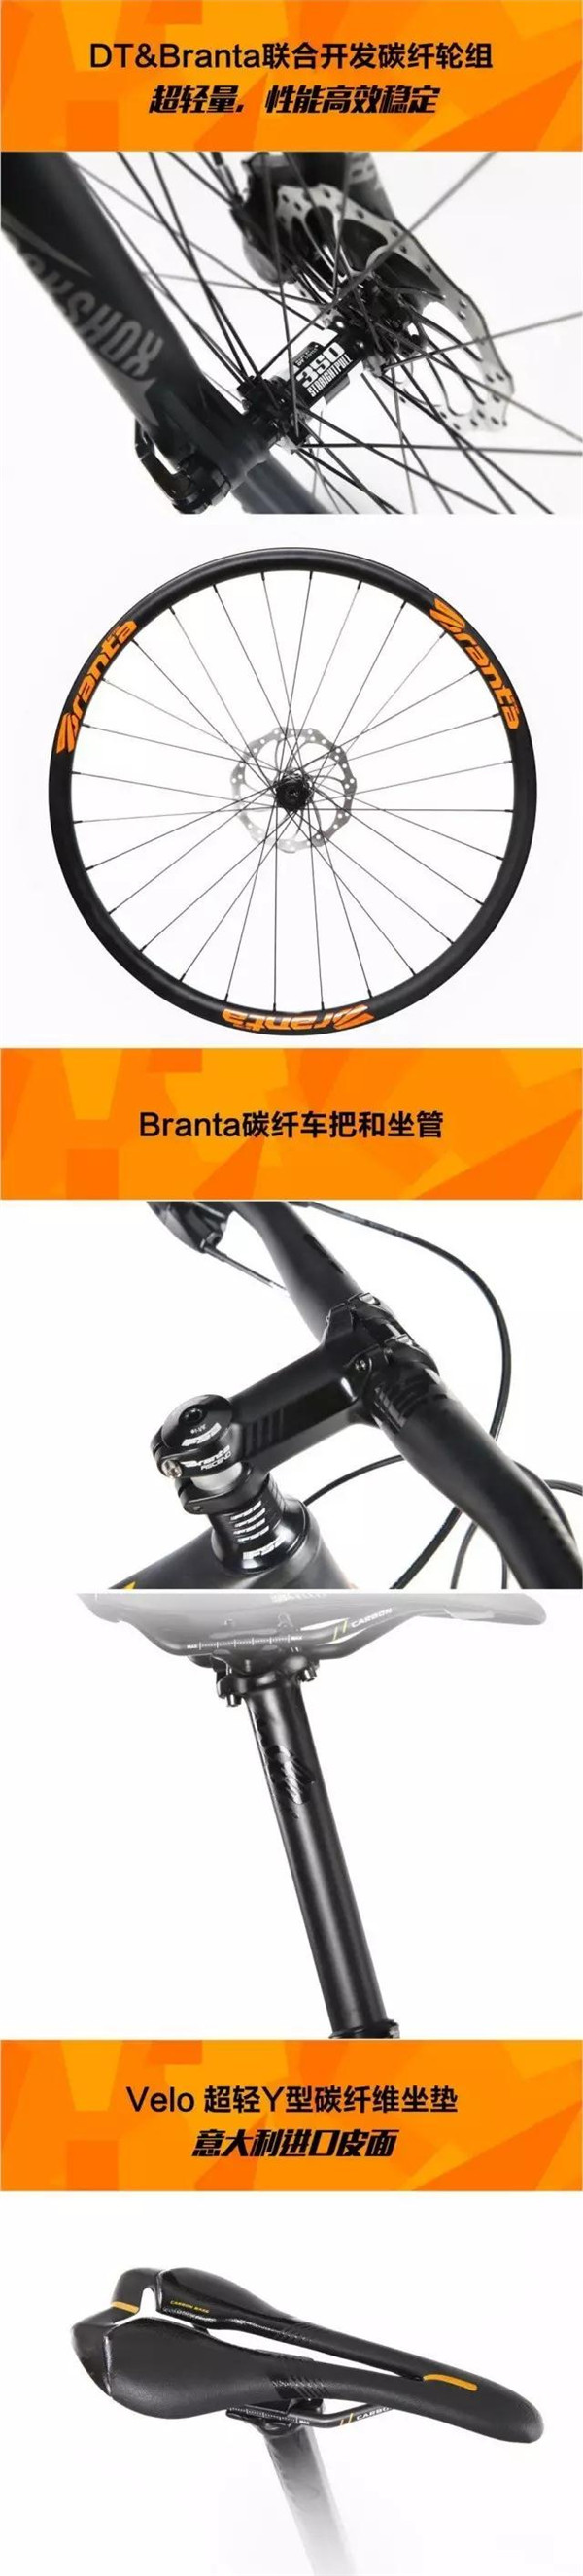 喜德盛21周年纪念版要来亚洲自行车展啦！